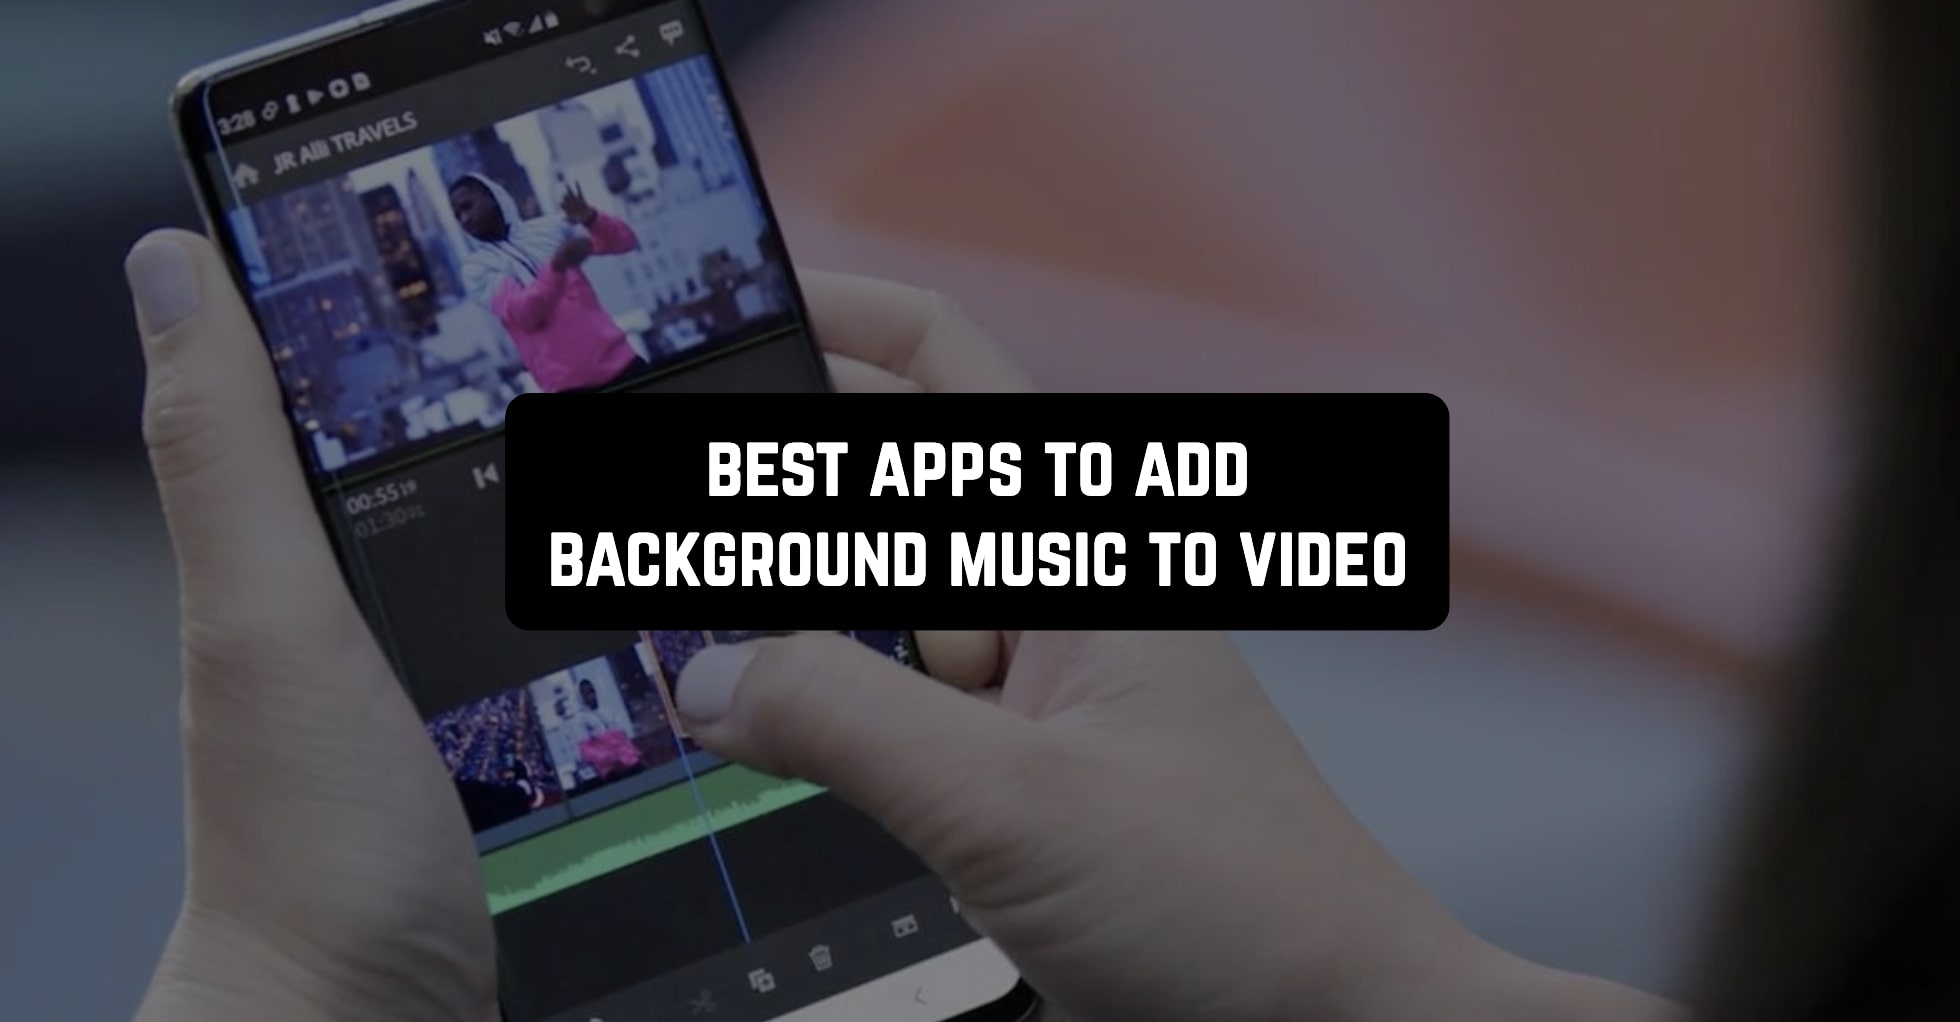 Dù bạn sử dụng thiết bị Android hay iOS, việc thêm nhạc nền cho video không còn là điều quá khó khăn. Các ứng dụng thêm nhạc nền hiện nay đa dạng và dễ sử dụng, giúp bạn tạo ra những video đẹp mắt và đầy sáng tạo. Hãy xem hình ảnh liên quan để tìm kiếm ứng dụng thêm nhạc nền phù hợp nhất với nhu cầu của bạn nhé!